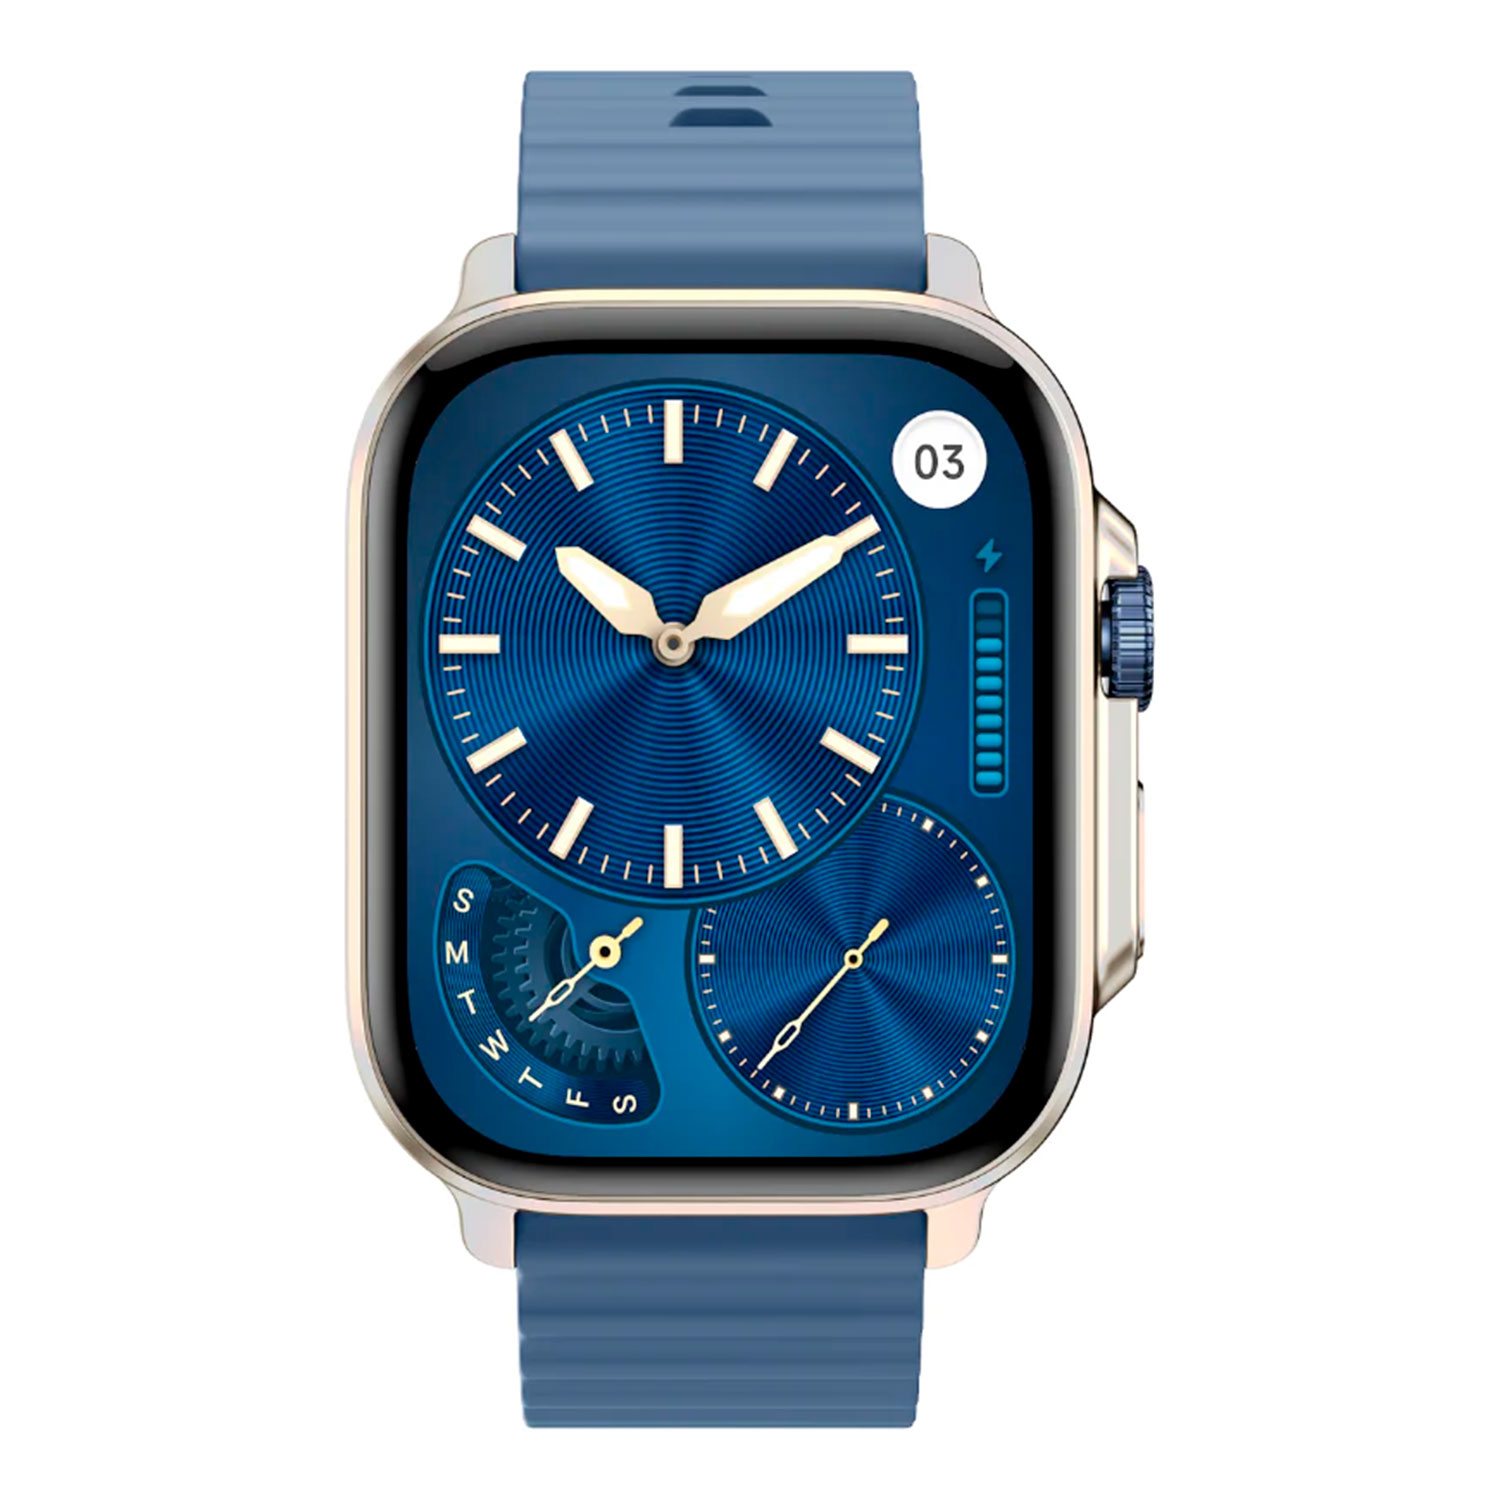 Smartwatch Udfine Watch Gear Alexa - Azul
